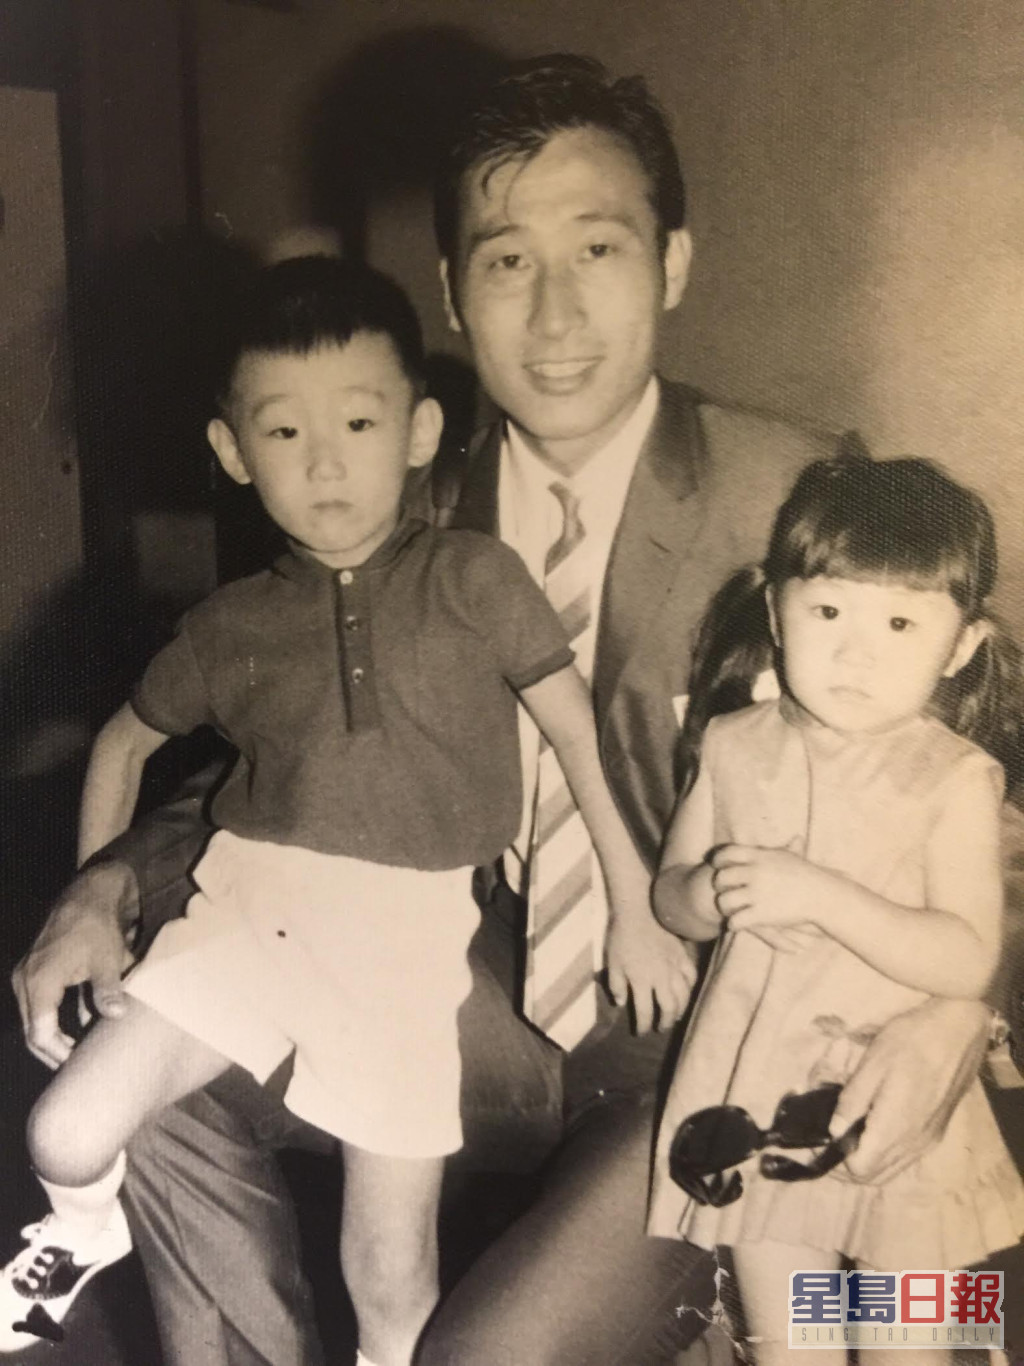 张学润虽然为形象指导，其实他出身自足球世家，父亲更是香港60年代球王张子岱。